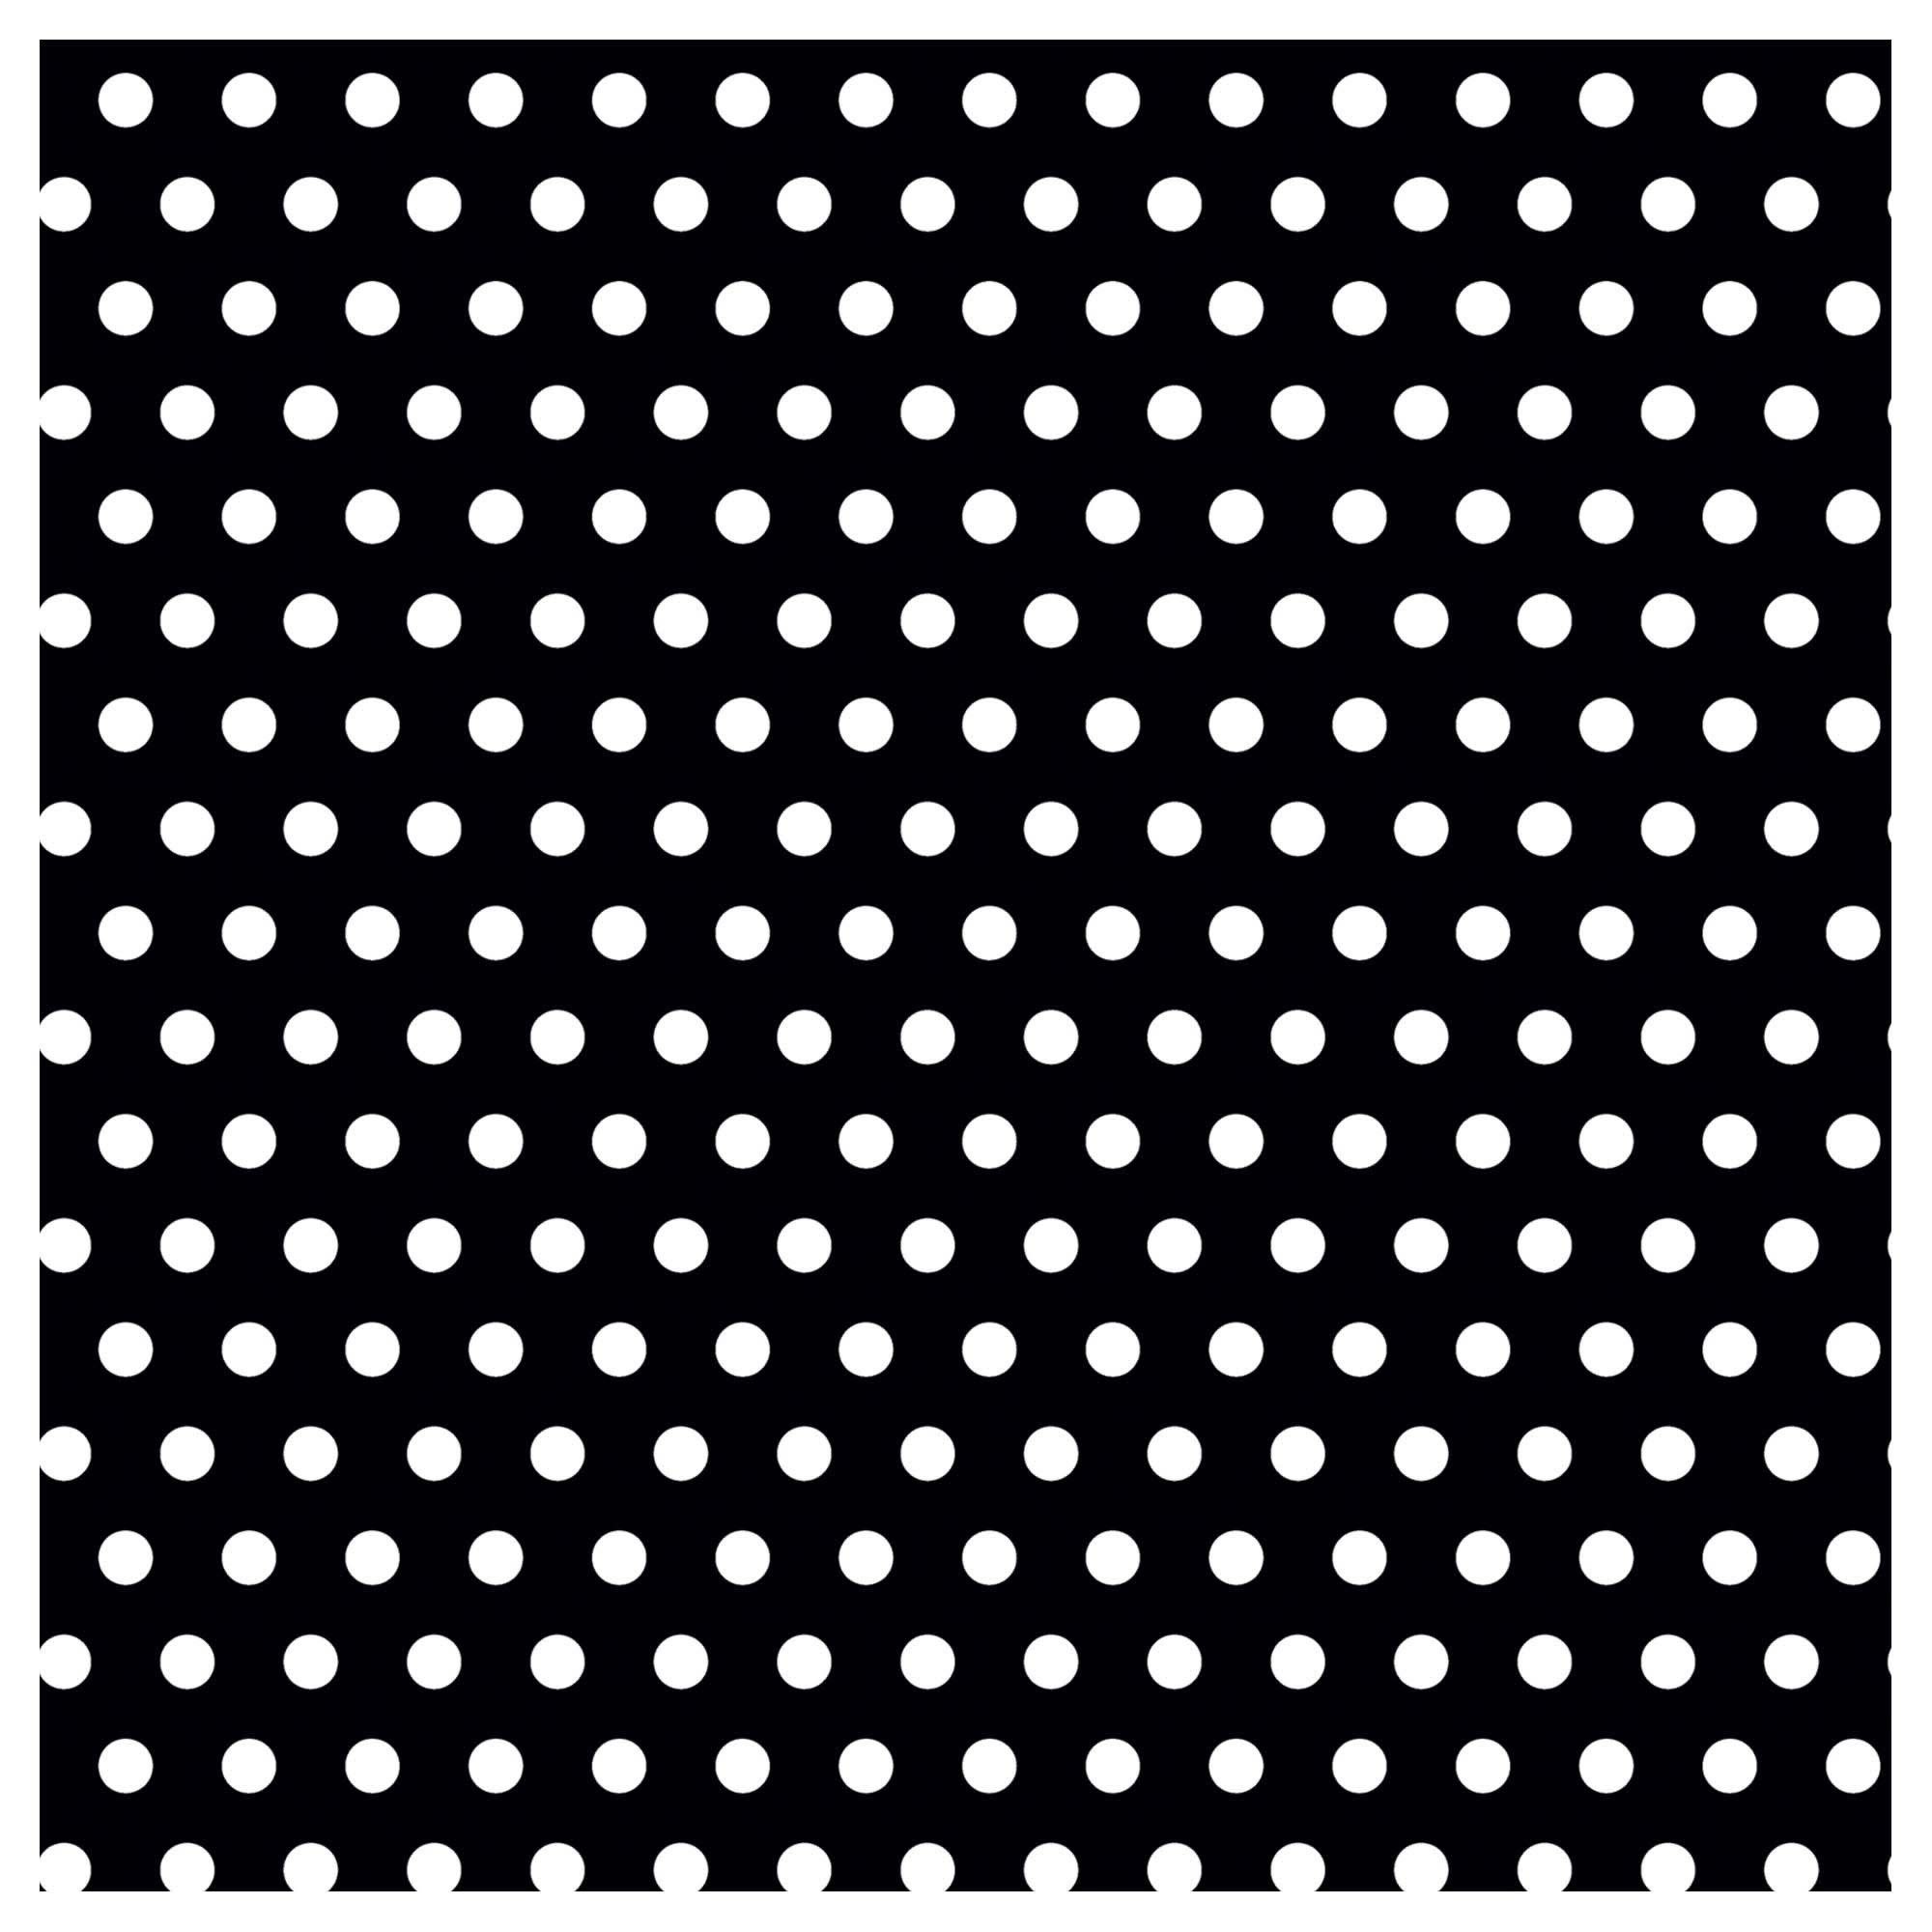 Polka Dot - Black Printed Jumbo Gift Wrap W/Hang Tab